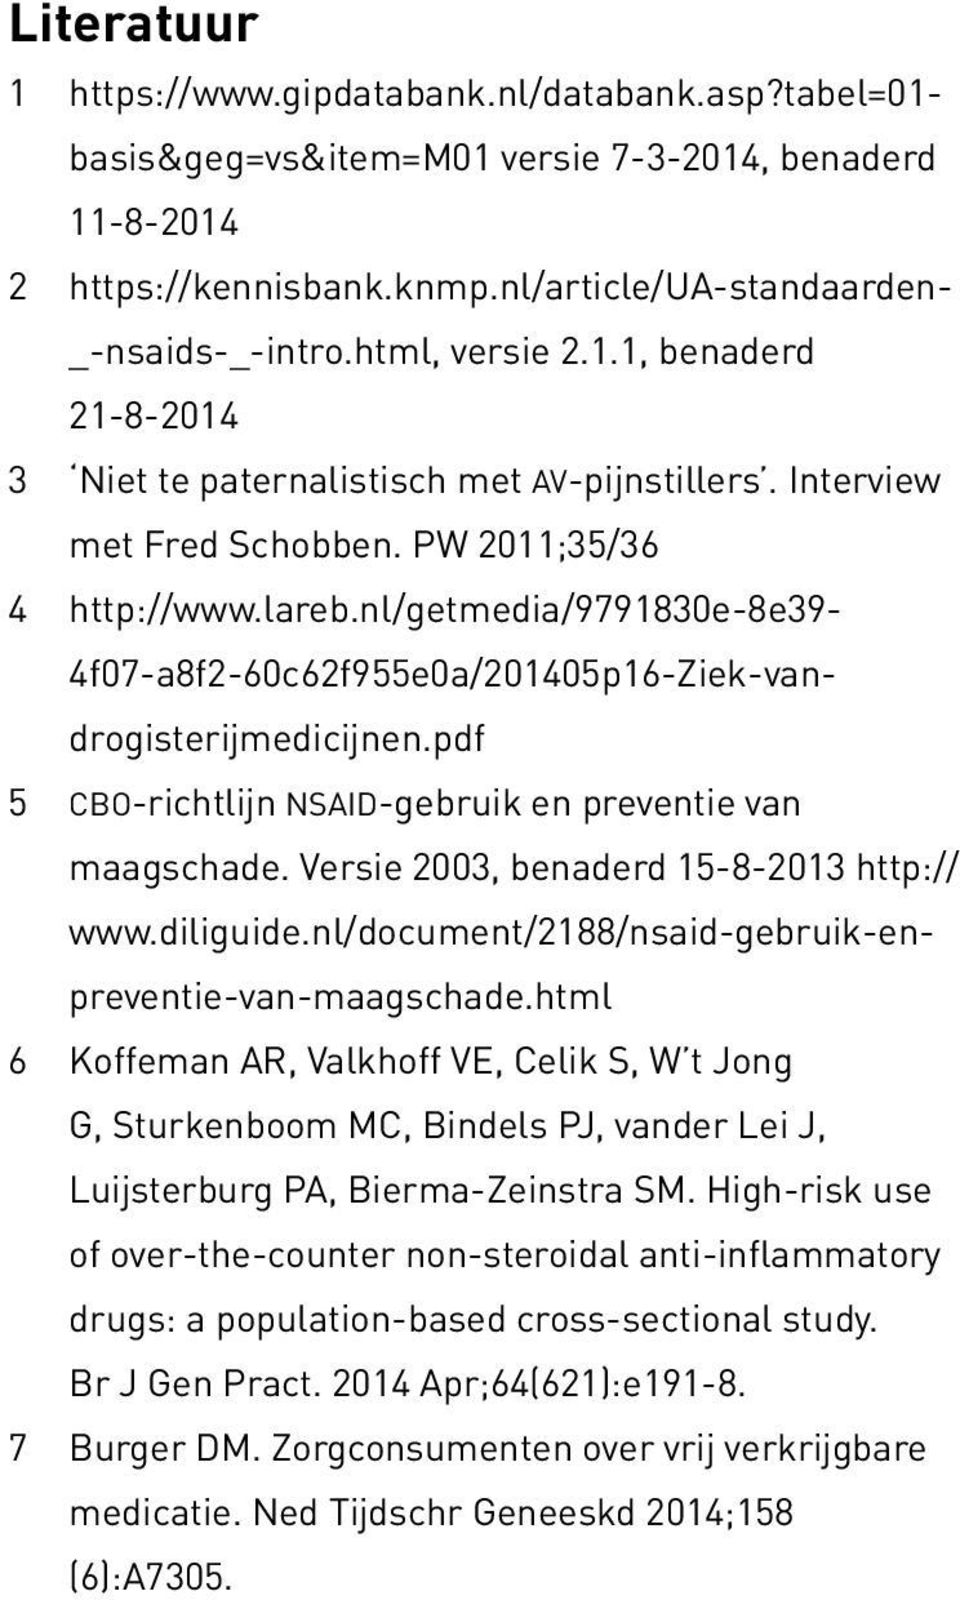 nl/getmedia/9791830e-8e39-4f07-a8f2-60c62f955e0a/201405p16-ziek-vandrogisterijmedicijnen.pdf 5 cbo-richtlijn nsaid-gebruik en preventie van maagschade. Versie 2003, benaderd 15-8-2013 http:// www.